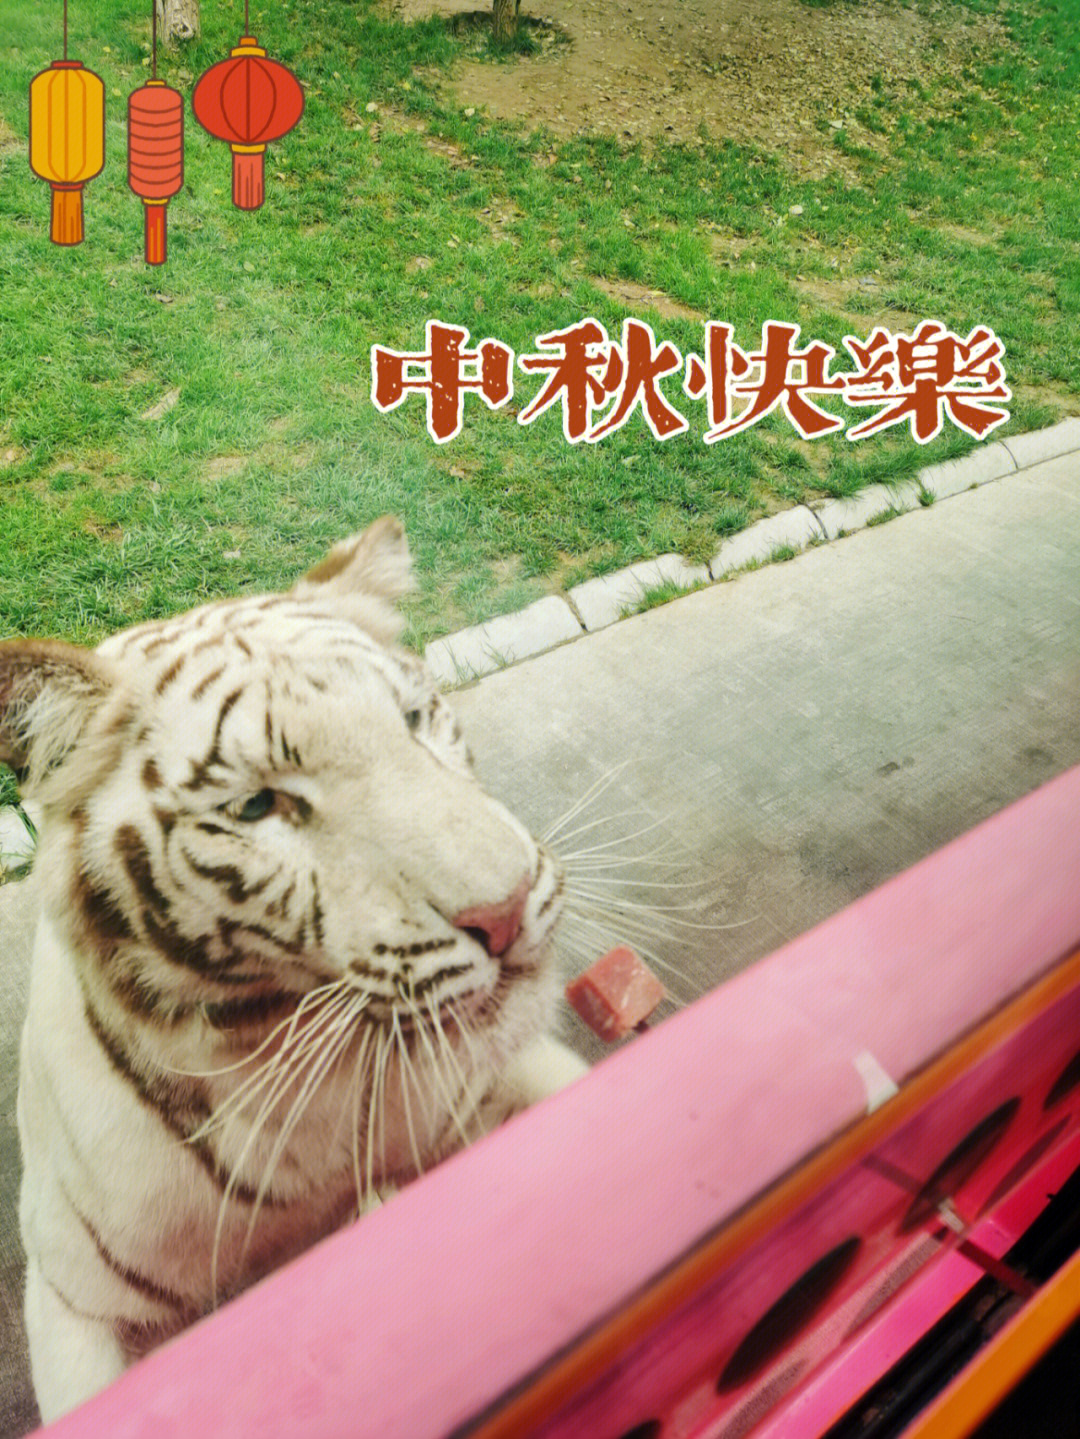 大狮子03大老虎91大狗熊93祝北京野生动物园所有动物中秋节快乐